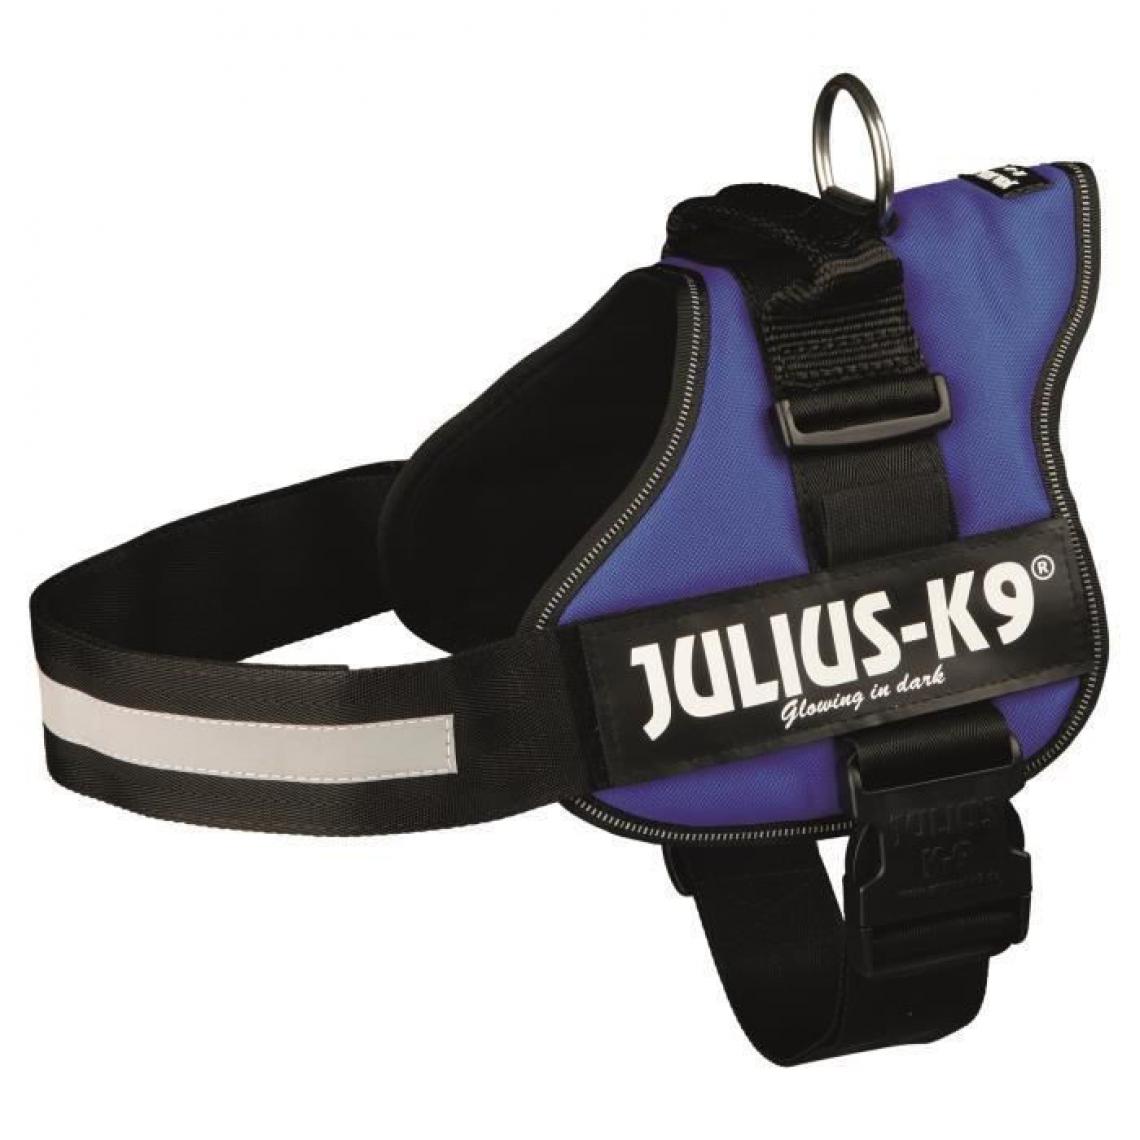 Julius K9 - Harnais Power Julius-K9 - 2 - L-XL : 71-96 cm-50 mm - Bleu - Pour chien - Equipement de transport pour chien